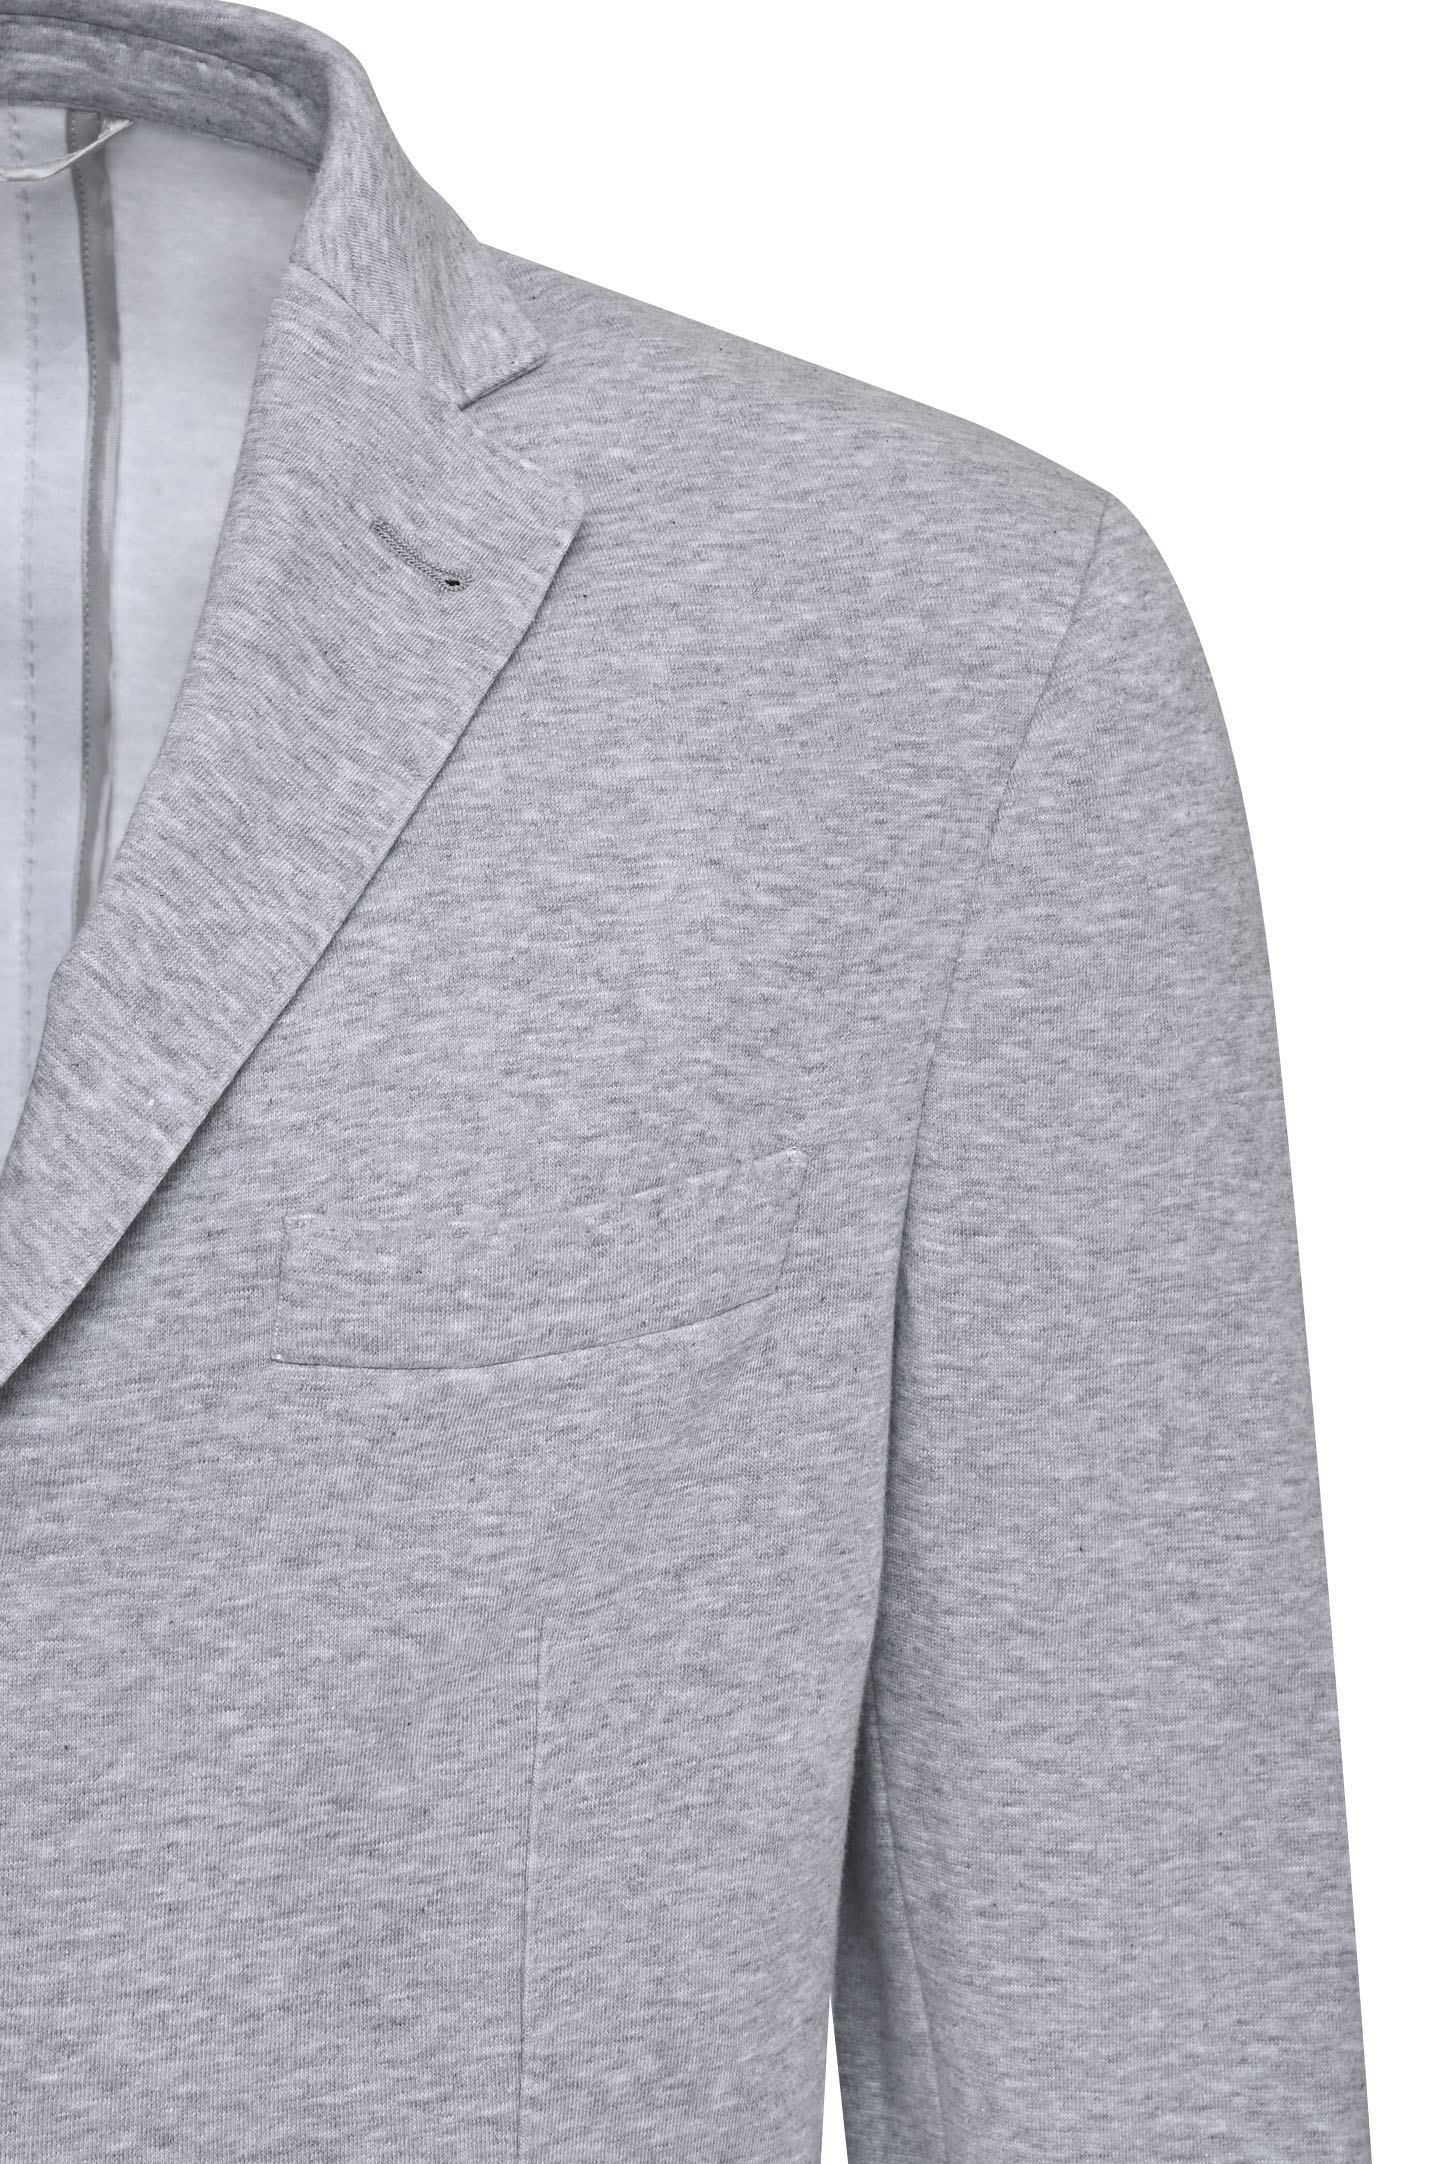 Пиджак DORIANI CASHMERE C138-7-S-2-T-AP, цвет: Серый, Мужской